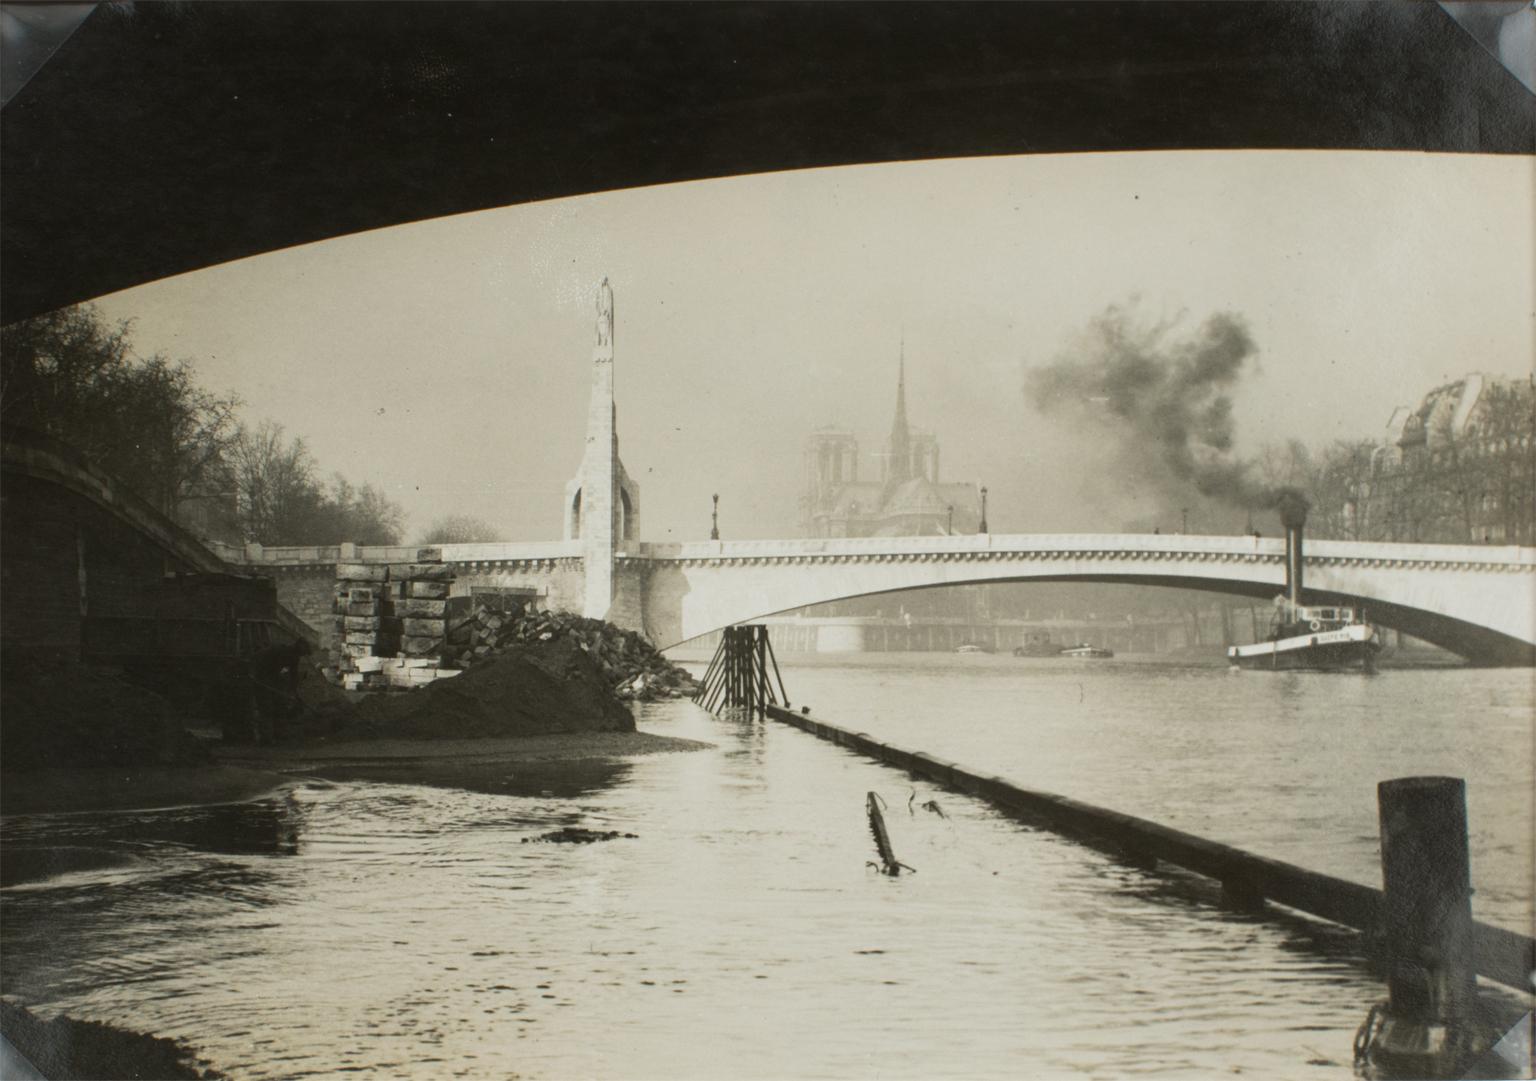 Flood of the Seine River in Paris circa 1930, photographie à la gélatine argentique B and W